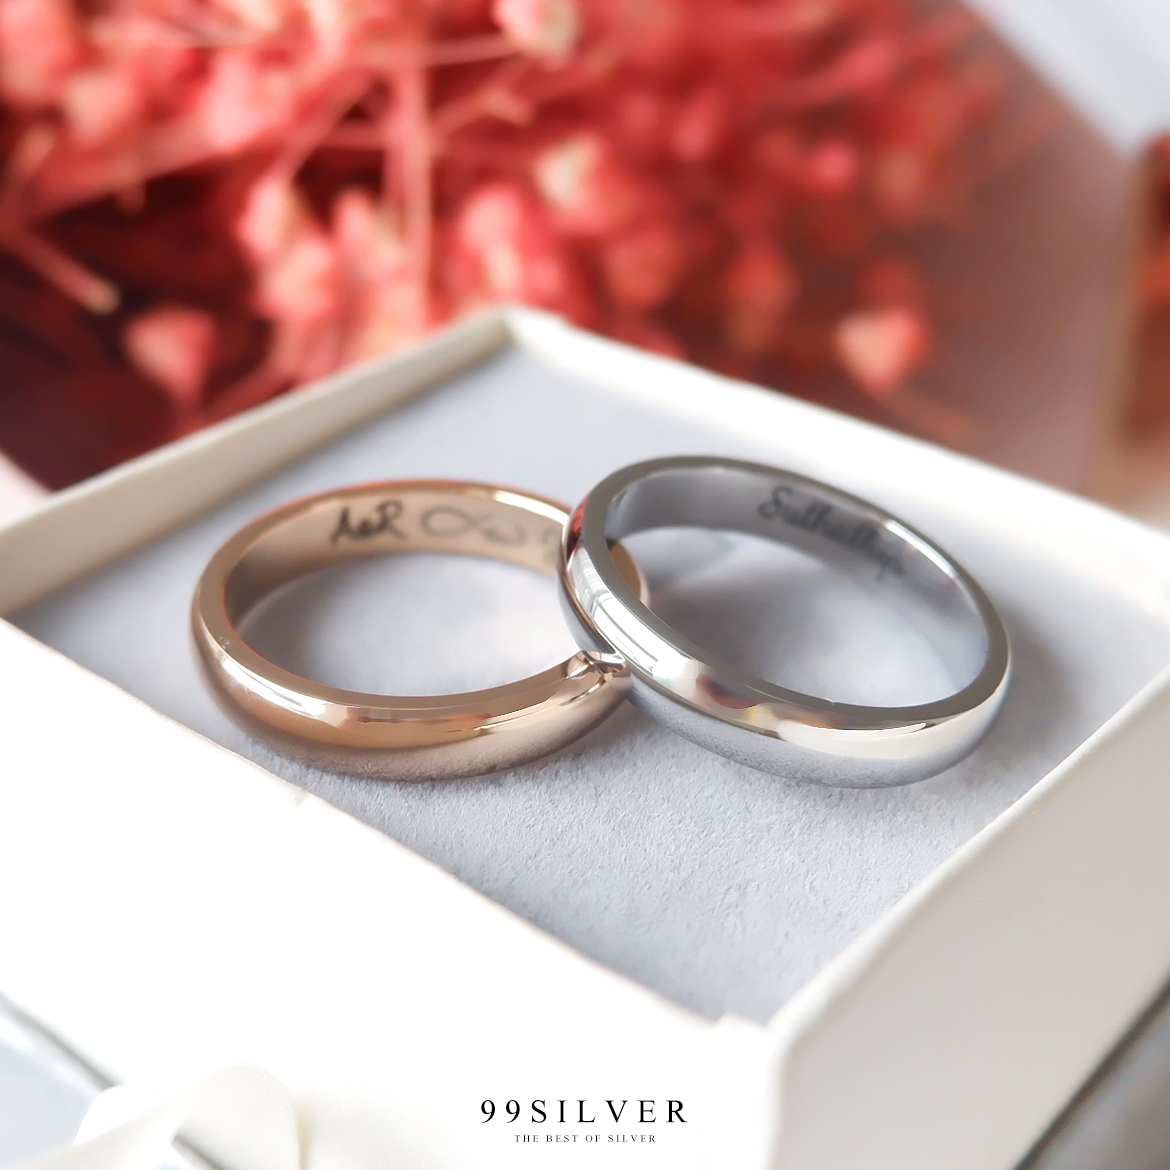 แหวนคู่รักสแตนเลส สีเงินและพิงค์โกล หน้ากว้าง 4 มิลลิเมตร ผิวเงาทรงโค้ง